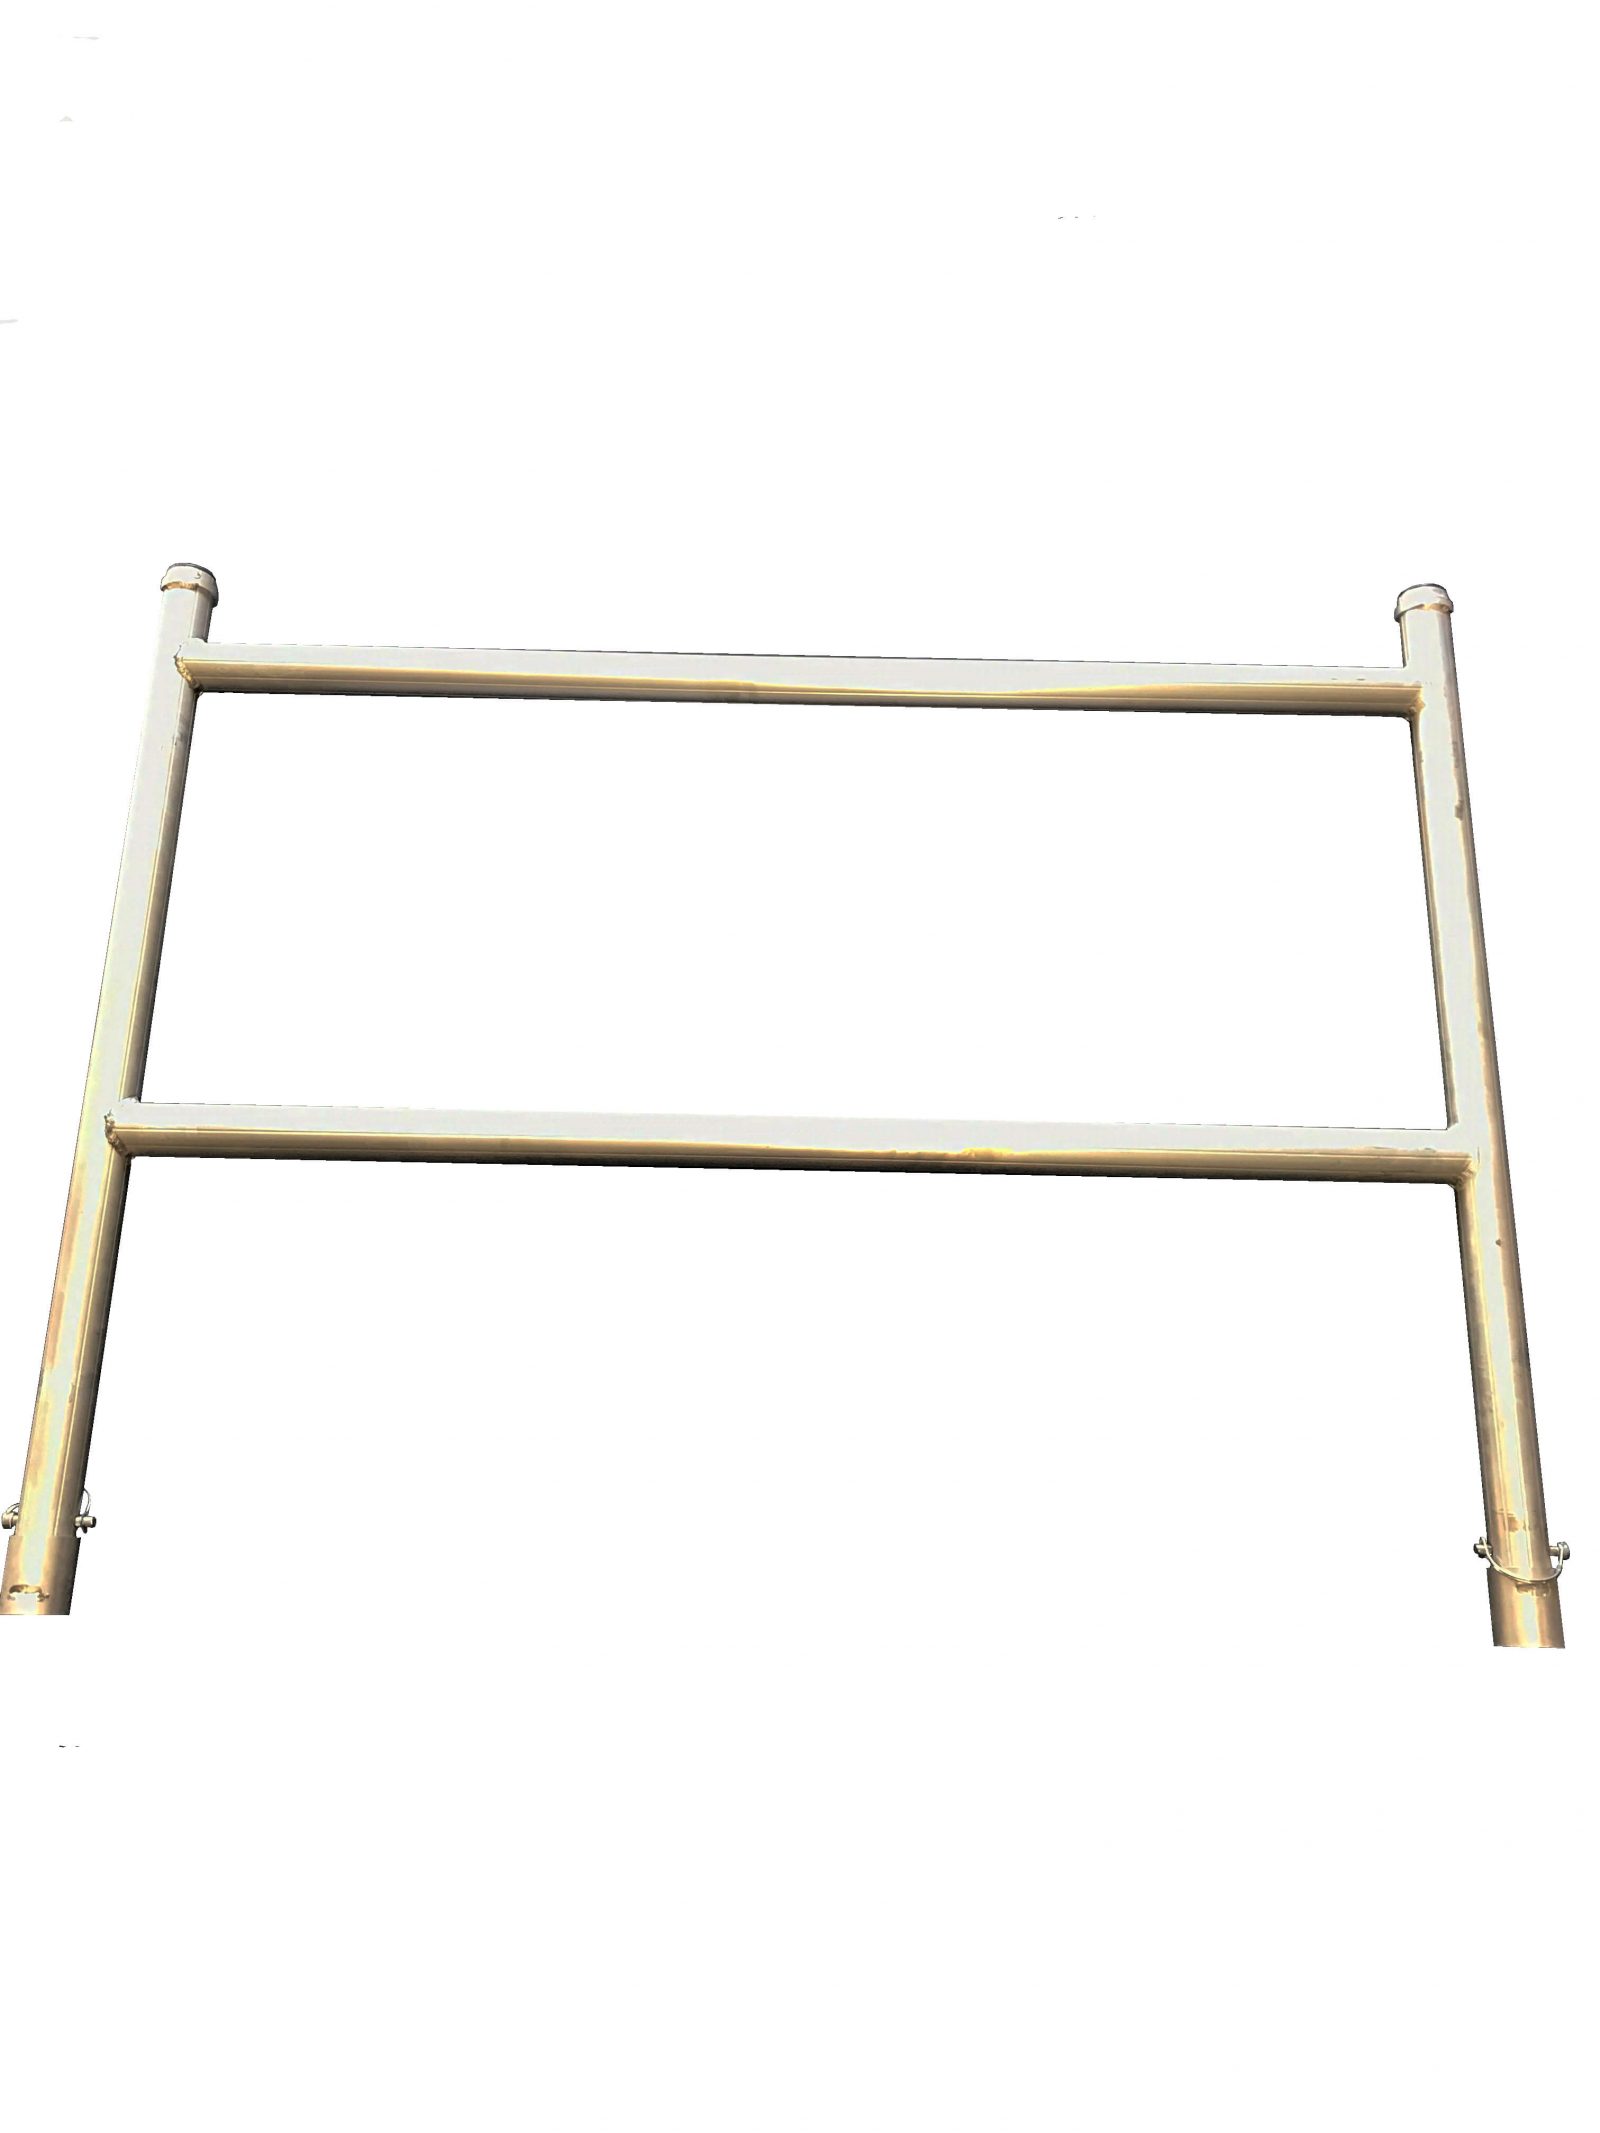 scaffold guardrail frame